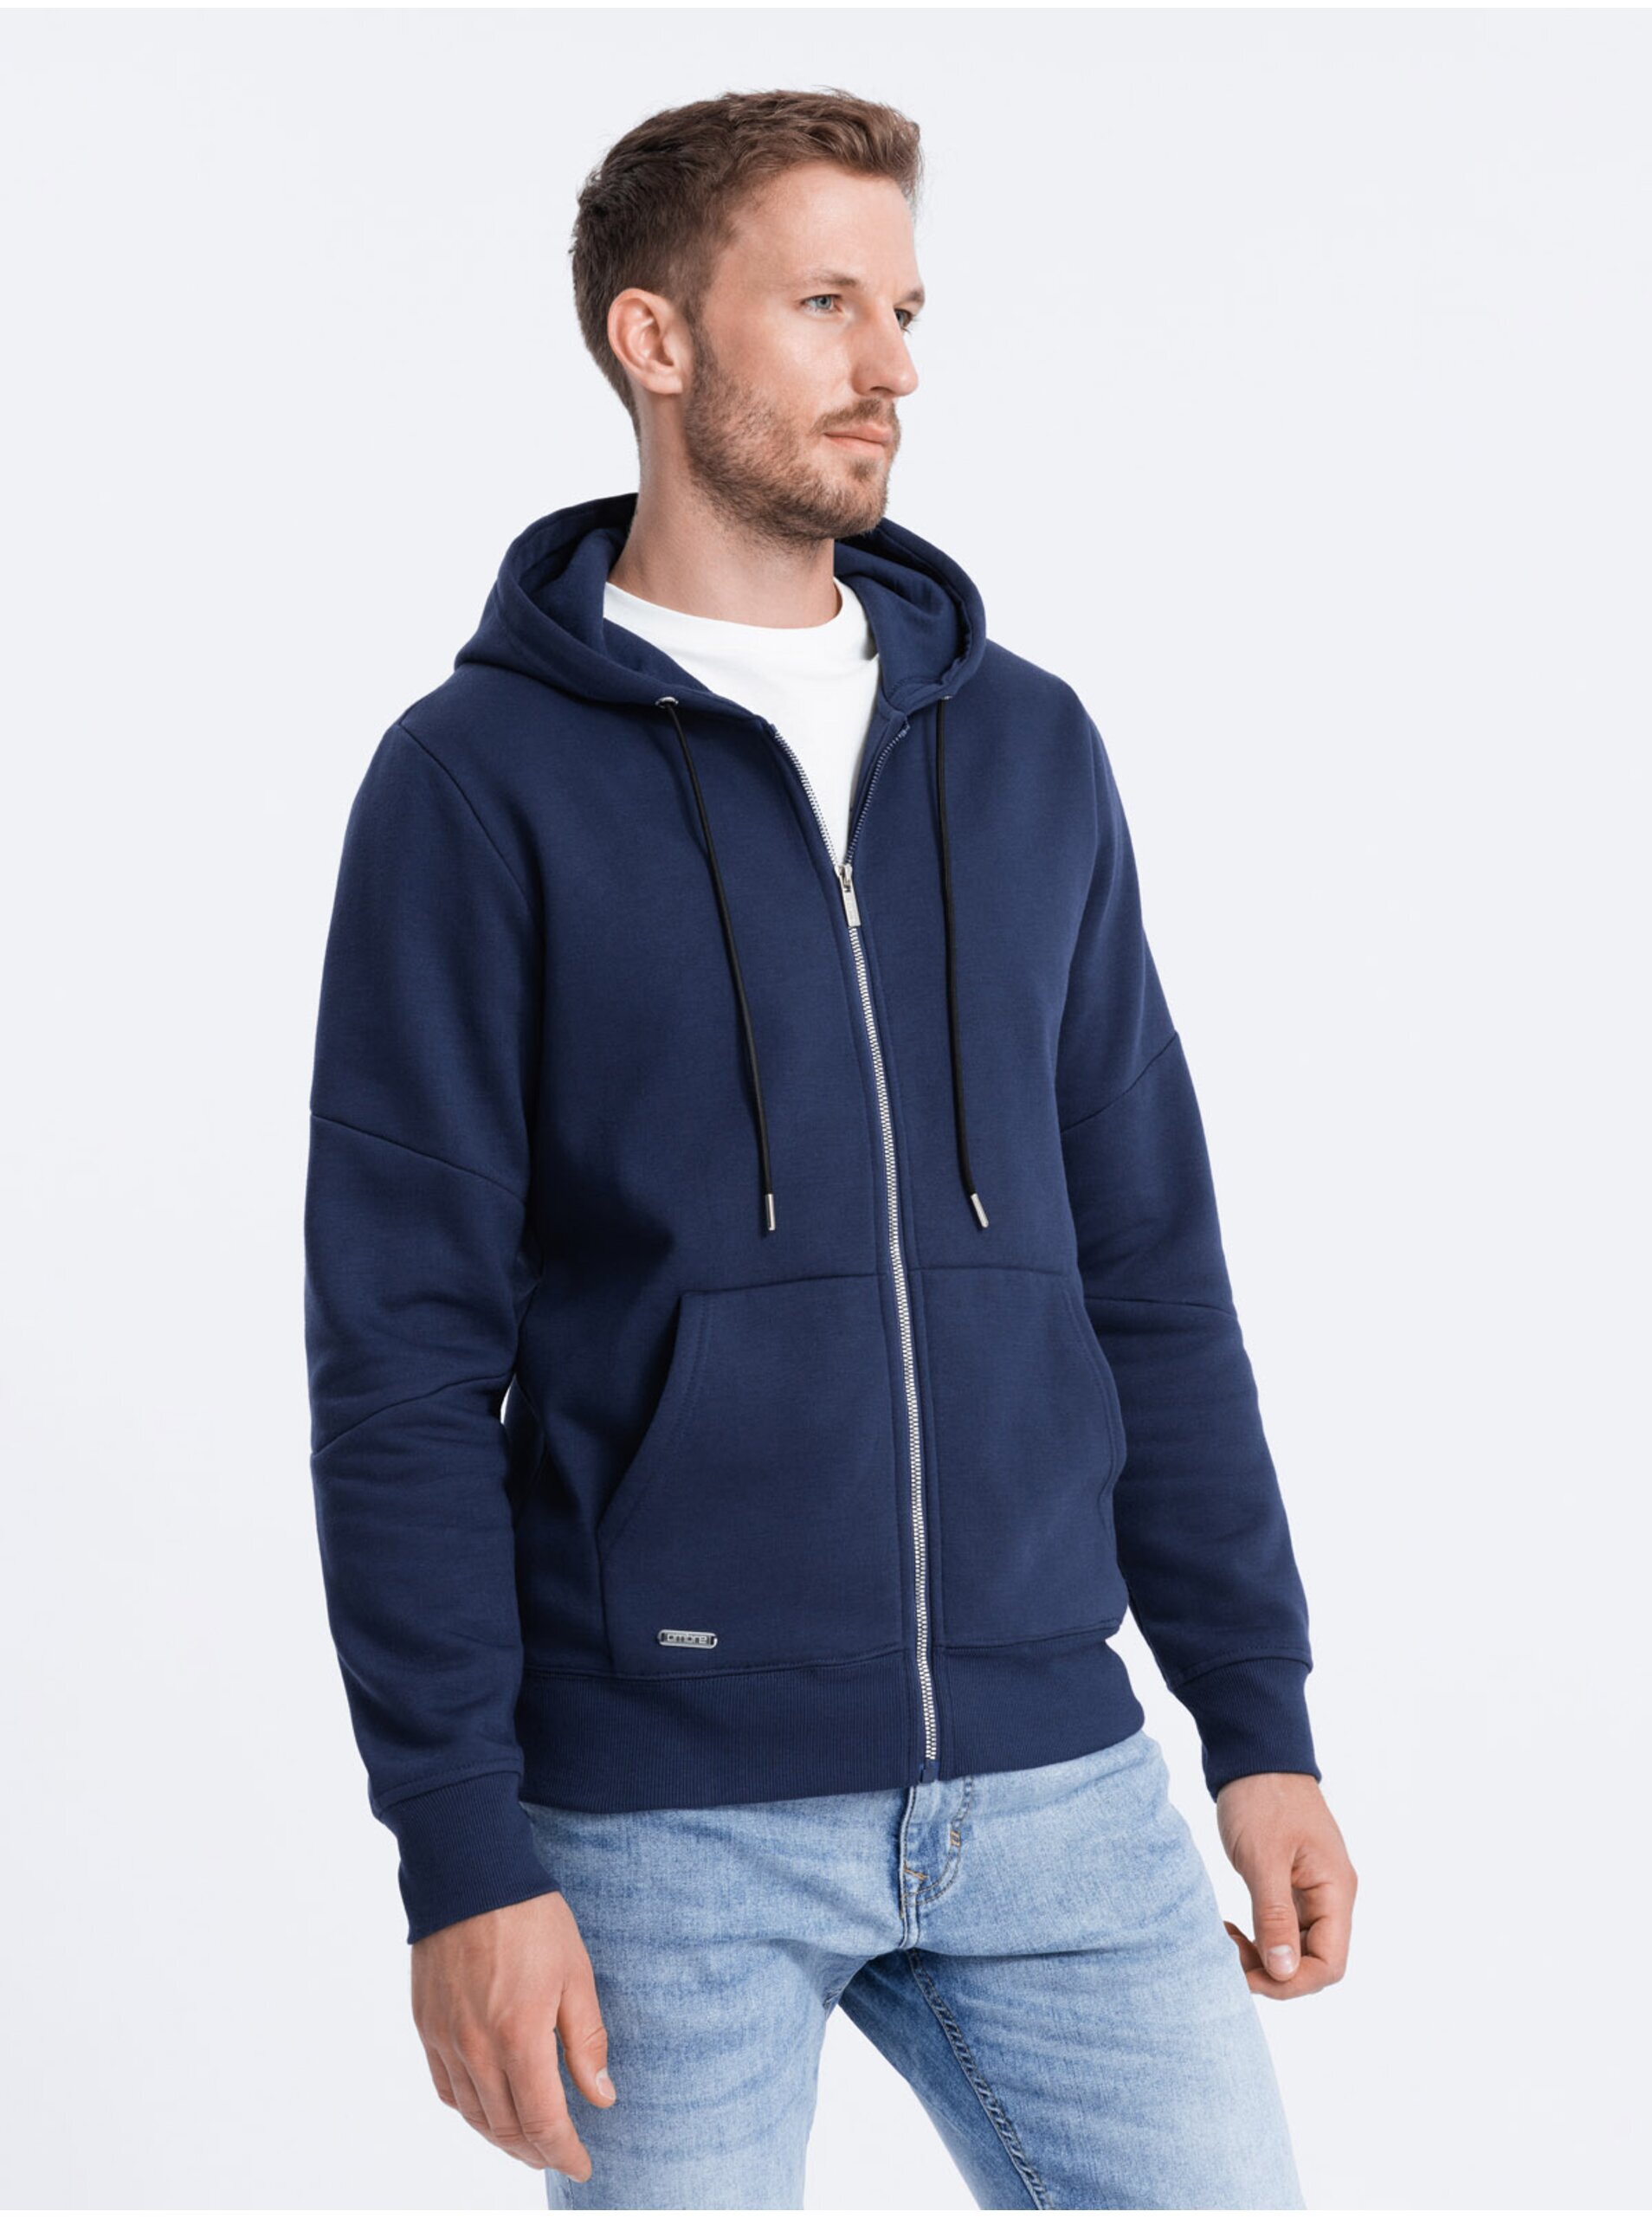 E-shop Tmavě modrá pánská mikina na zip s kapucí Ombre Clothing